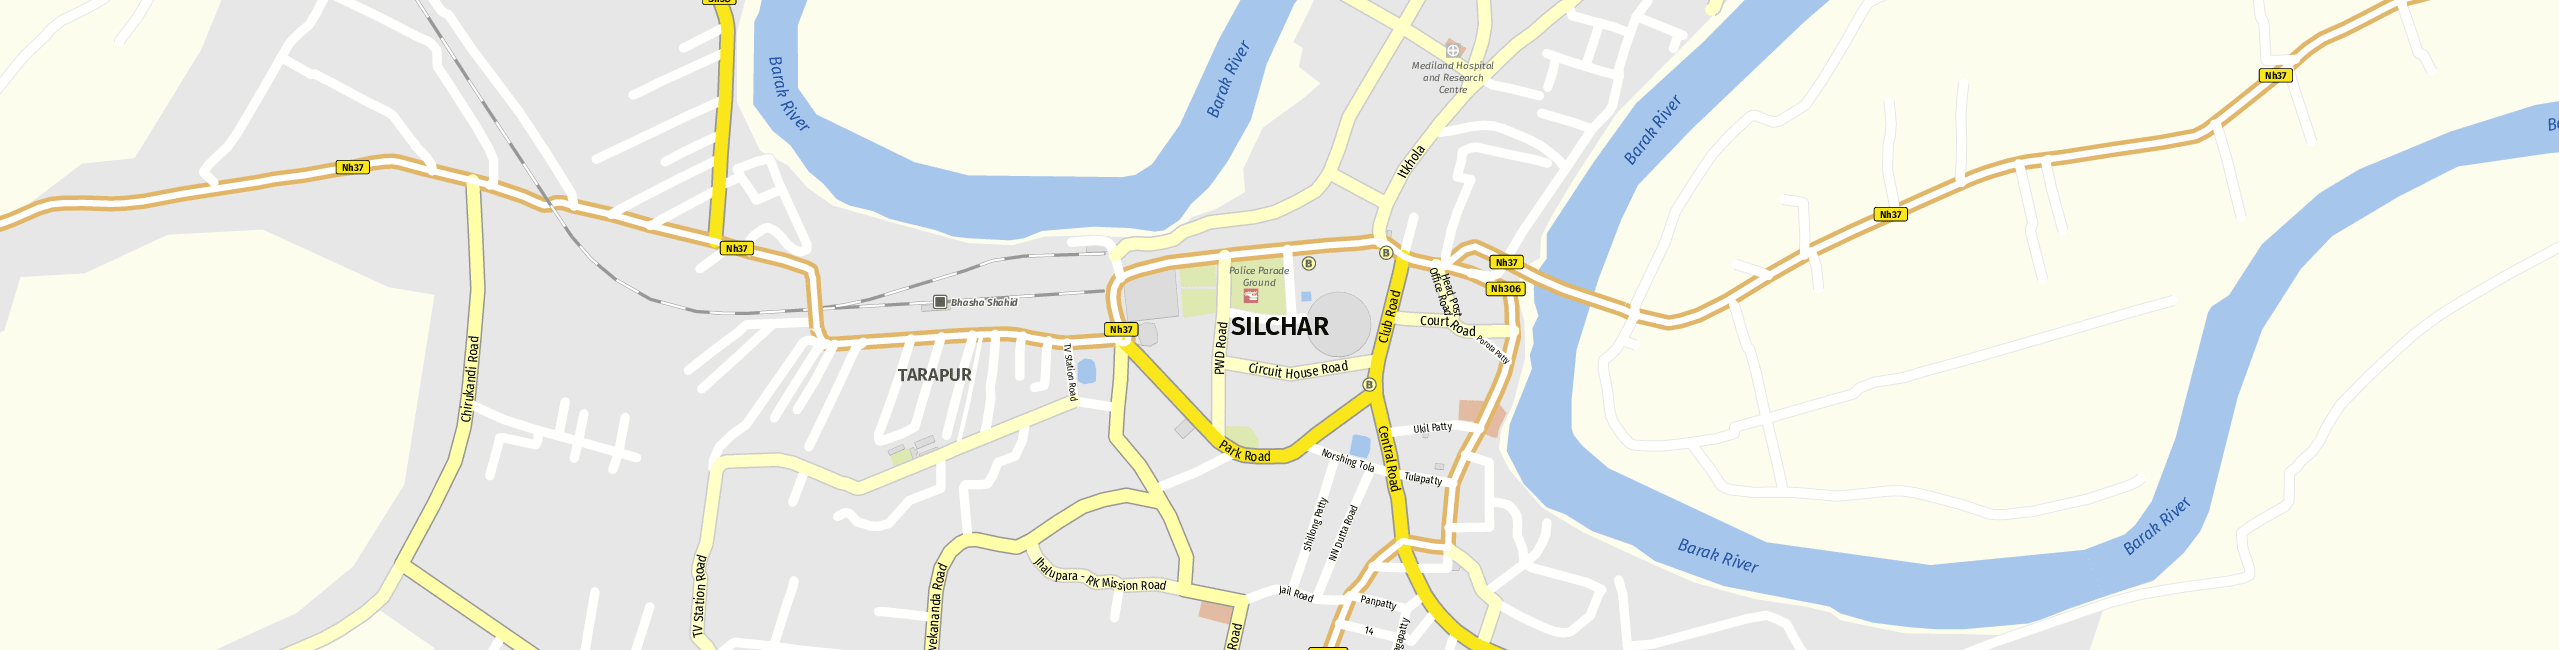 Stadtplan Silchar zum Downloaden.